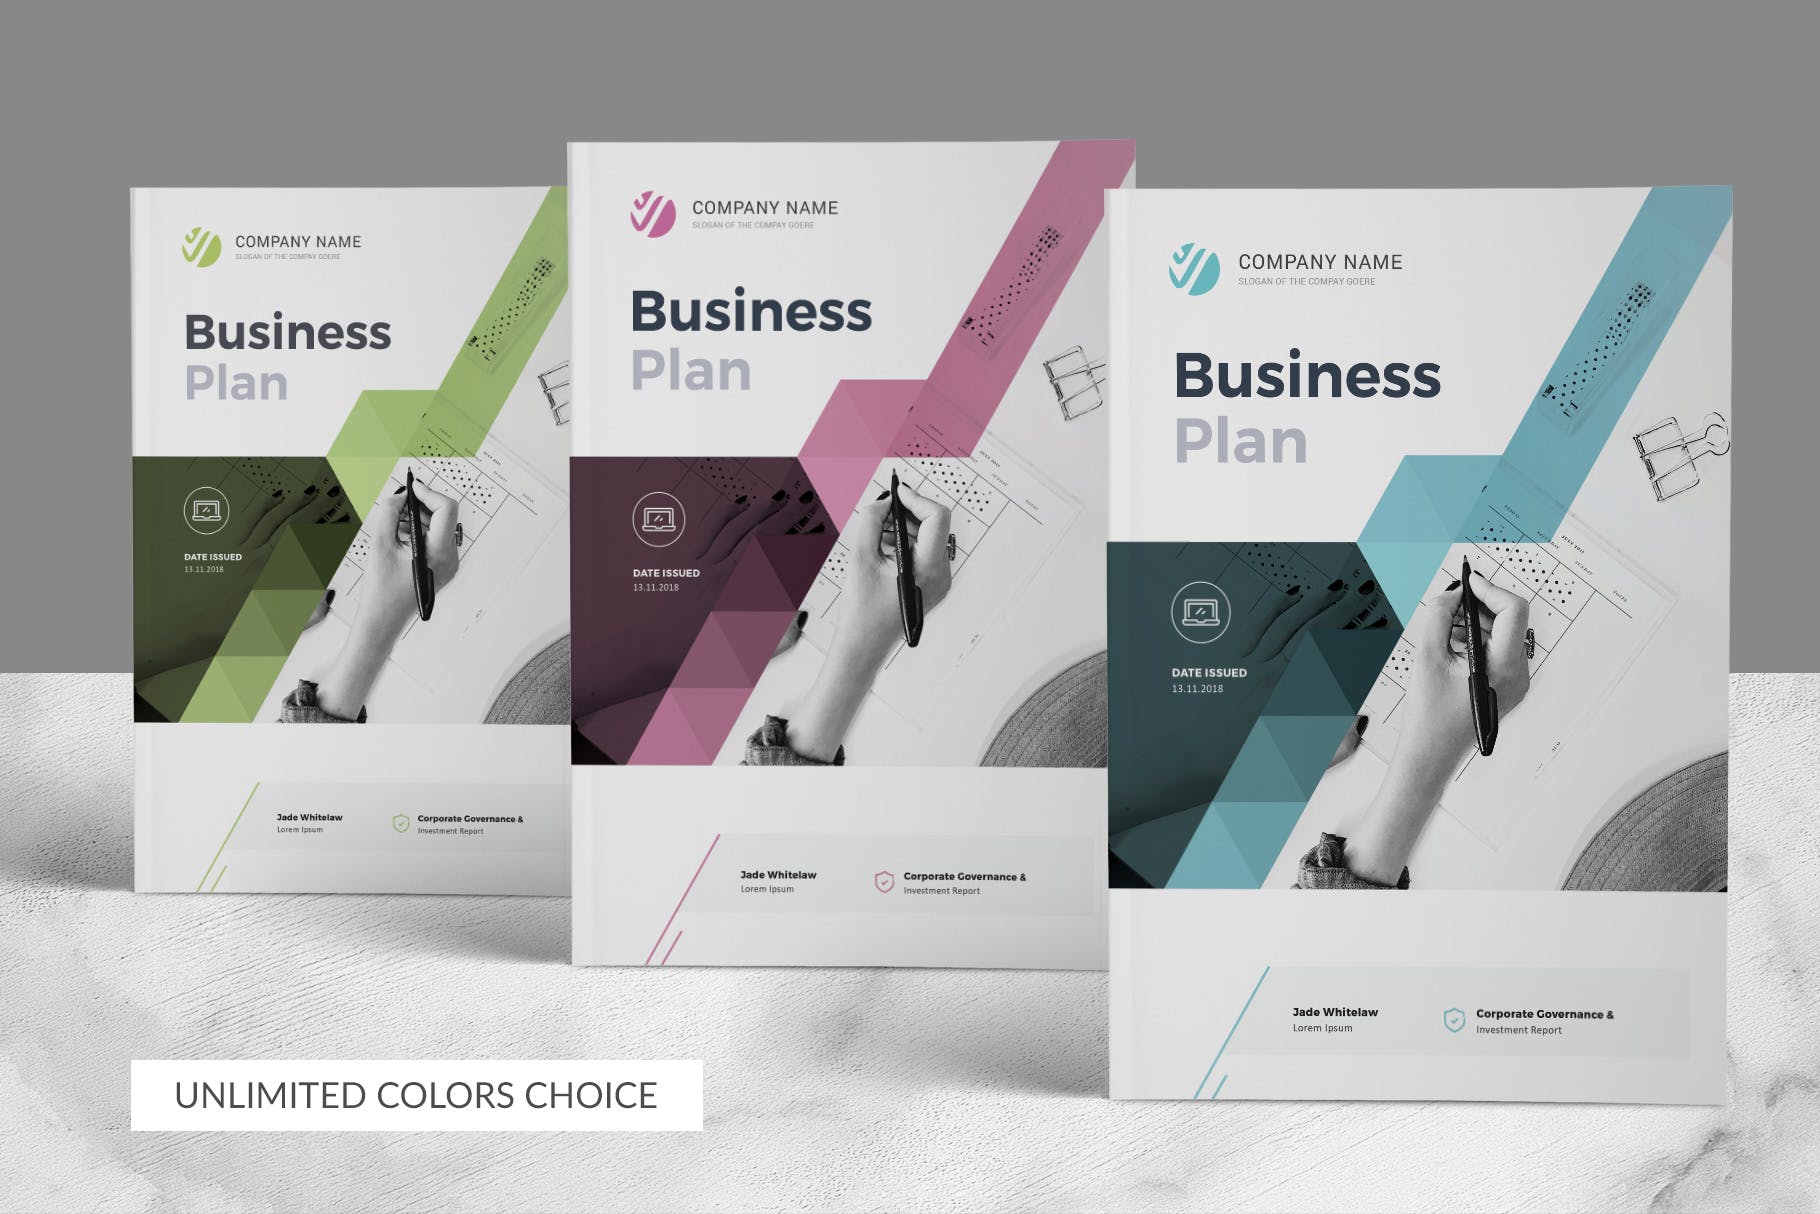 商业计划书/商业规划书设计模板 Business Plan插图(3)